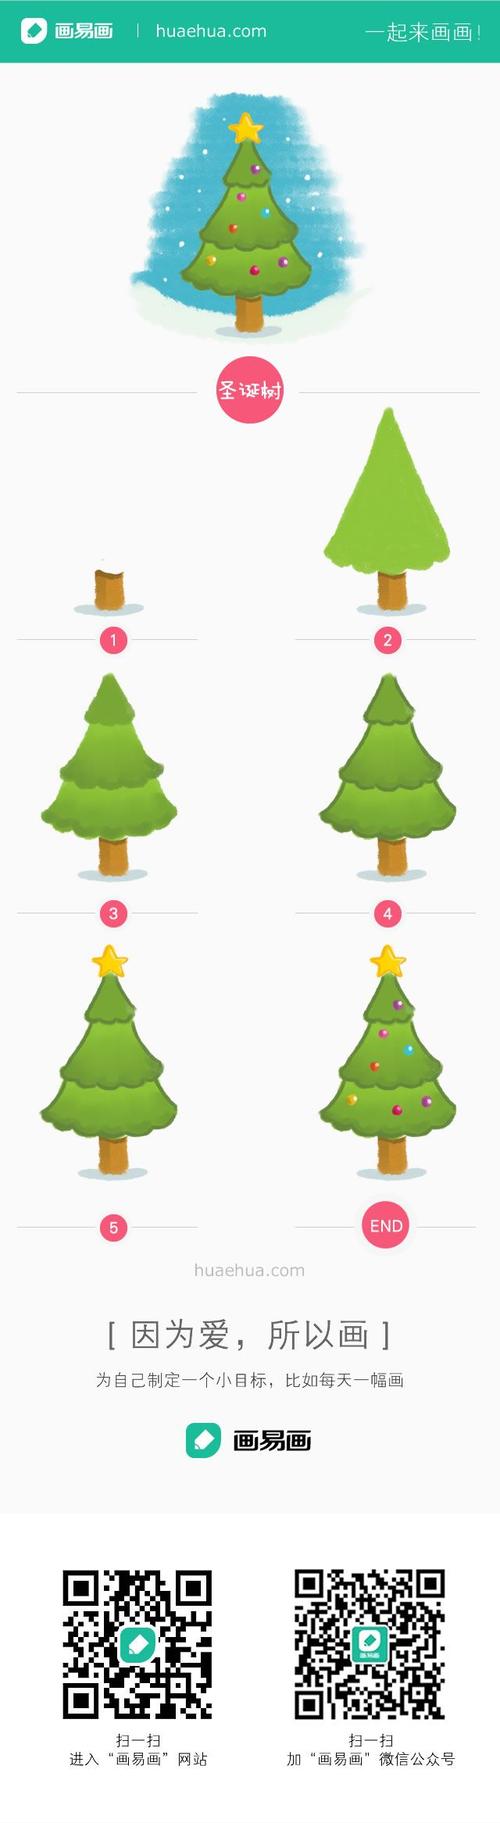 圣诞树简易画法 圣诞树简单怎么画